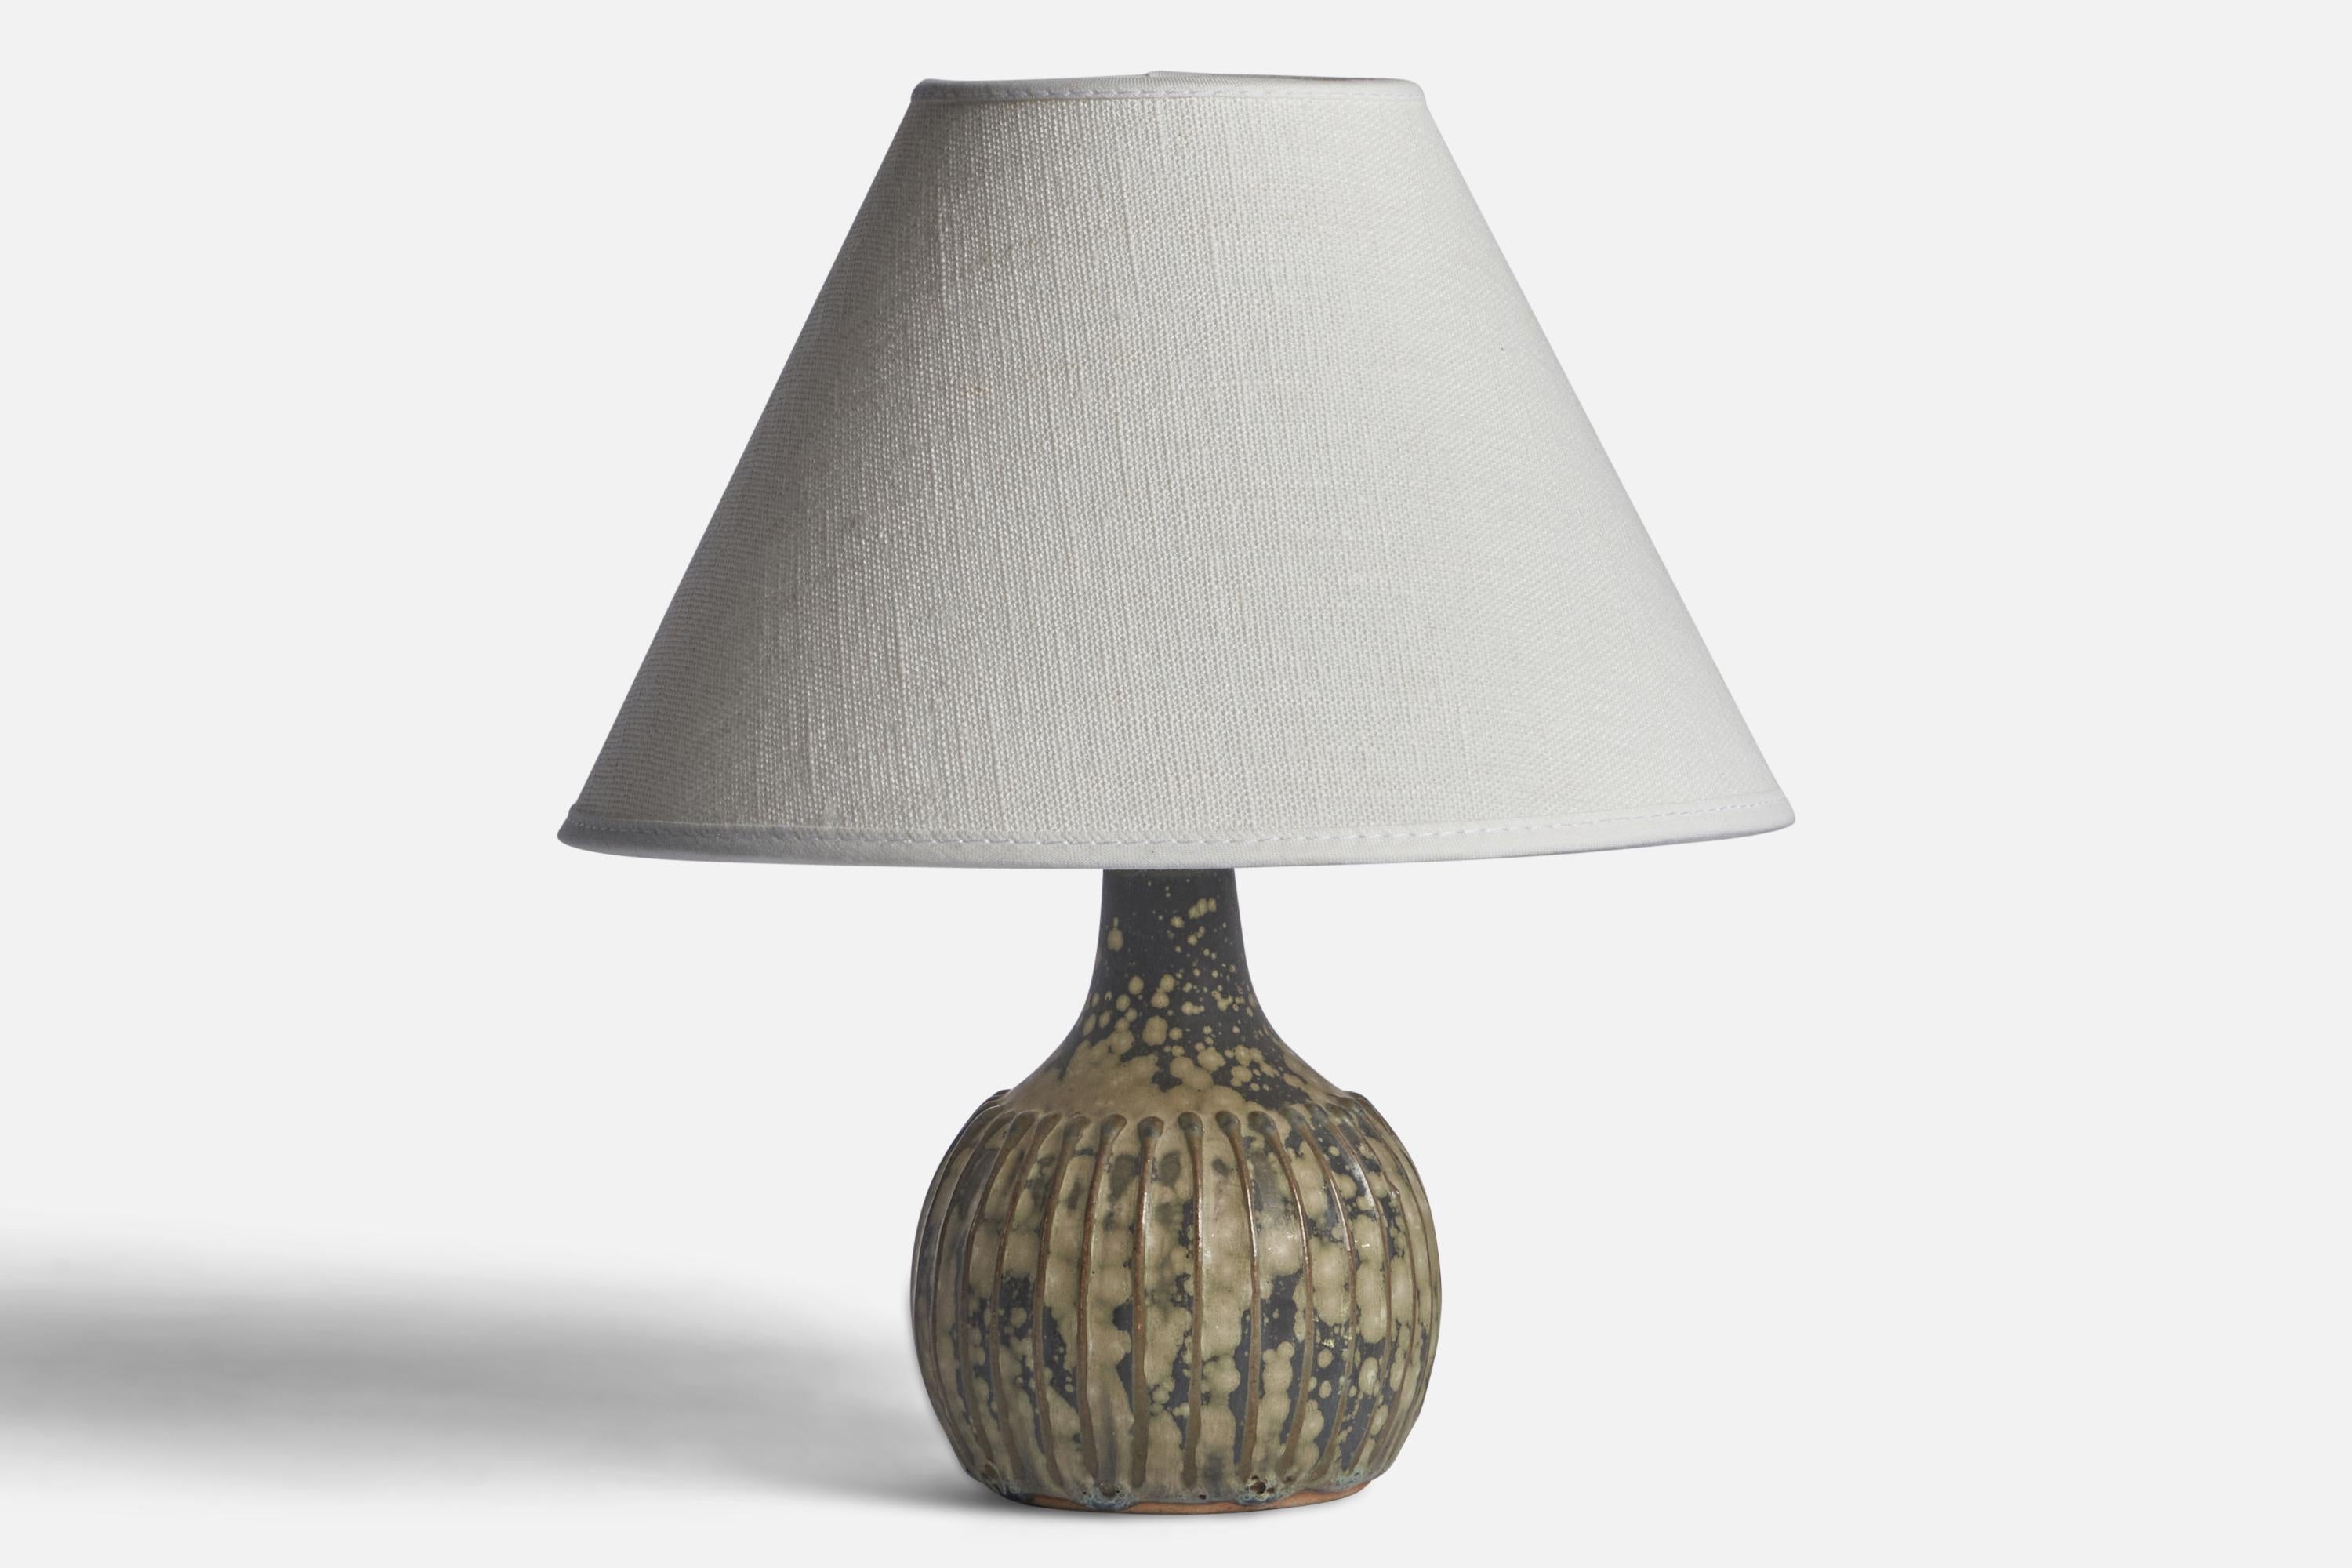 Lampe de table en grès émaillé gris, conçue et produite par Rolf Palm, Mölle, Suède, années 1960.

Dimensions de la lampe (pouces) : 6.5